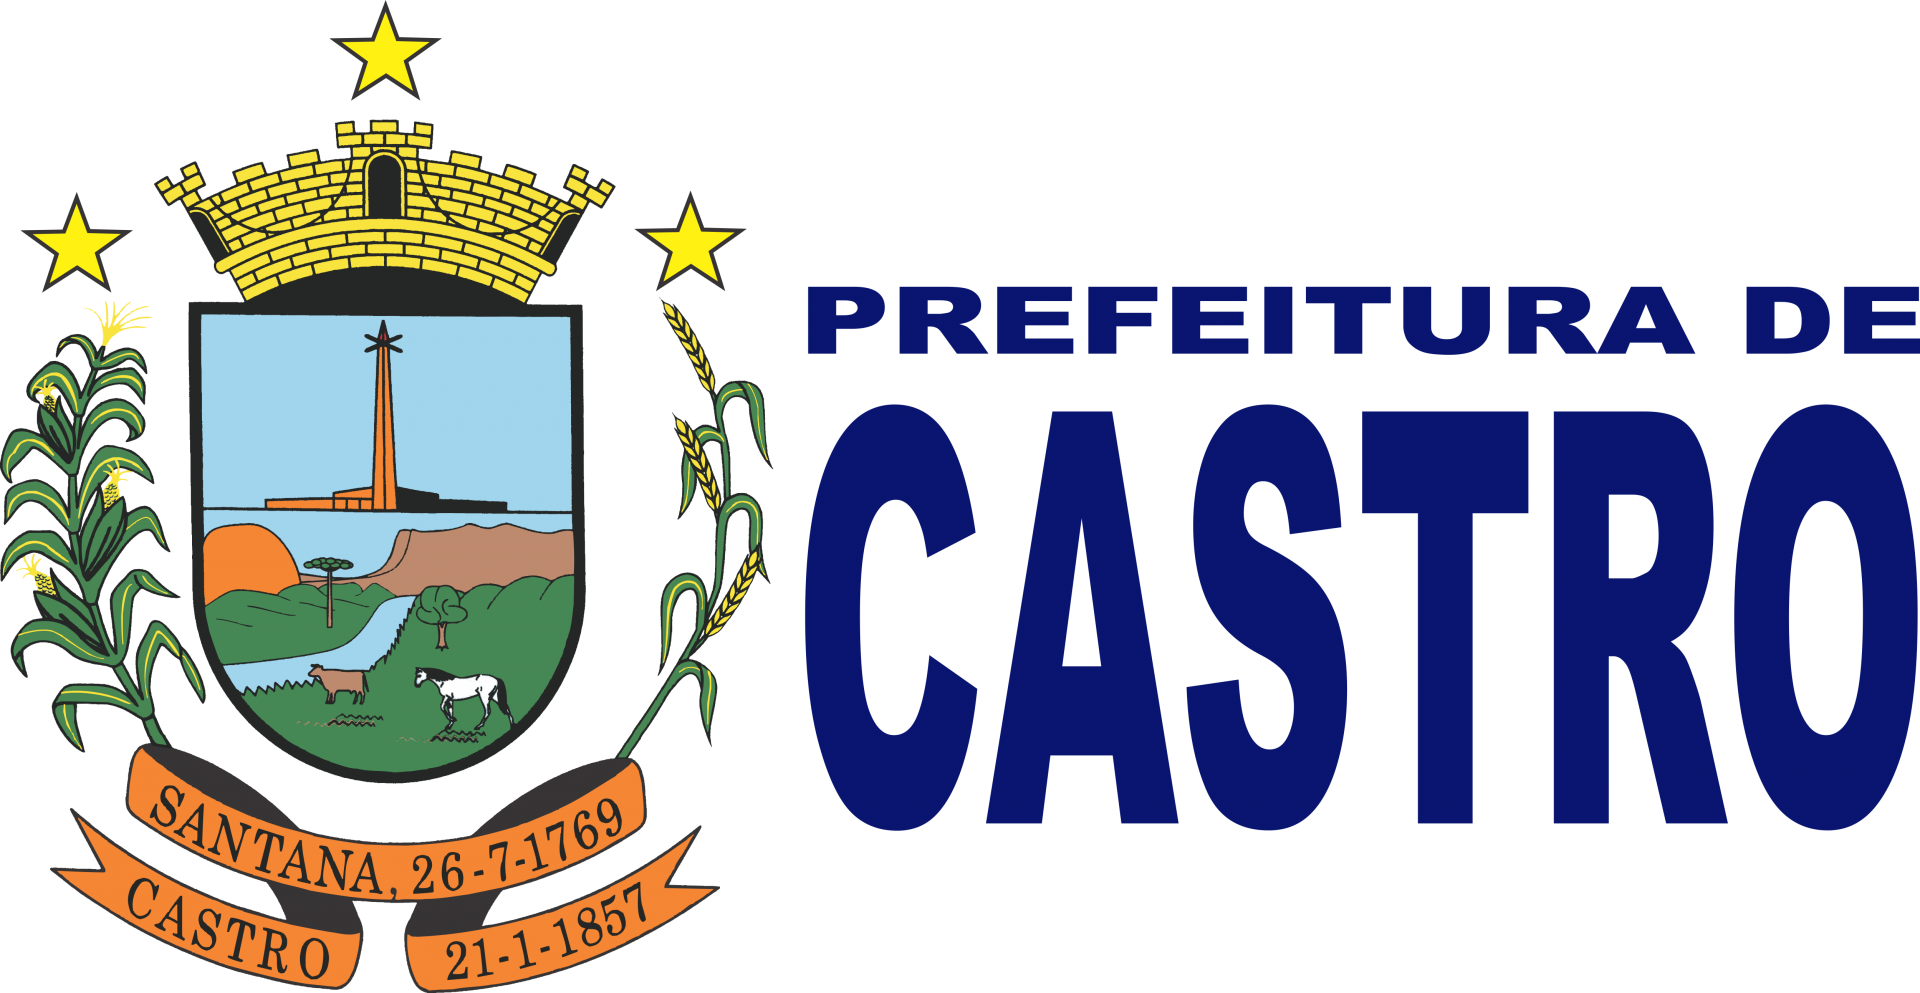 Prefeitura de Castro (PR)